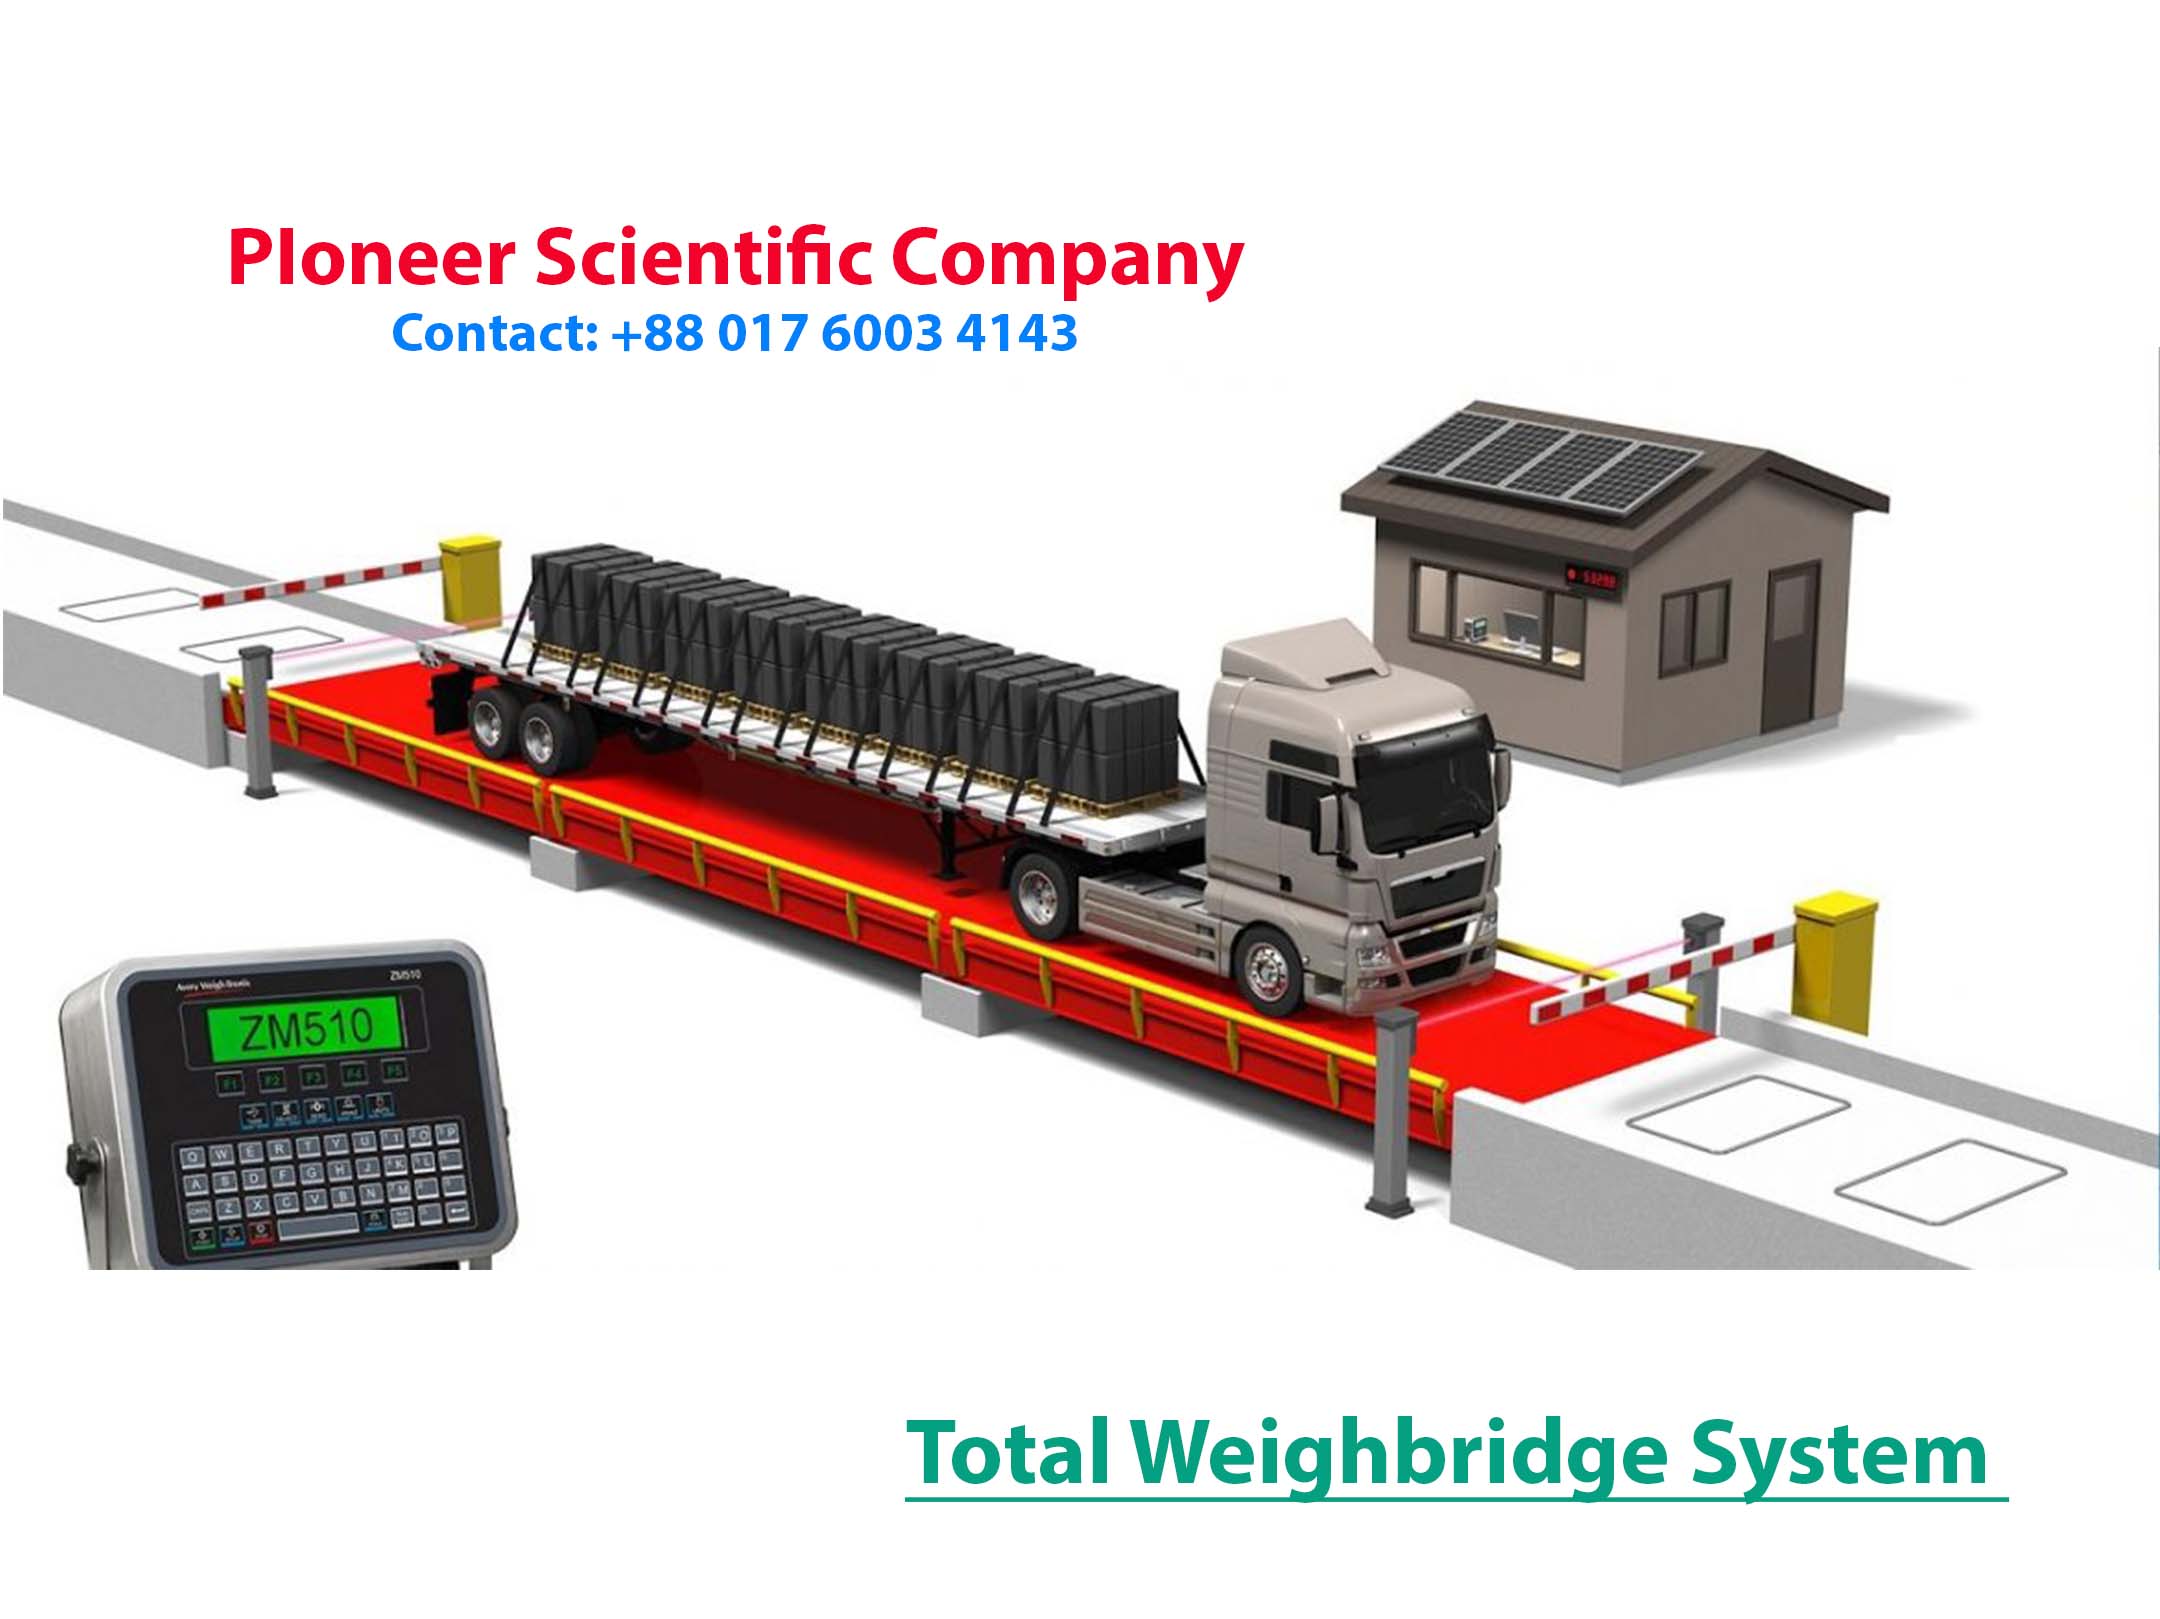 Weighing System (Weighbridge)